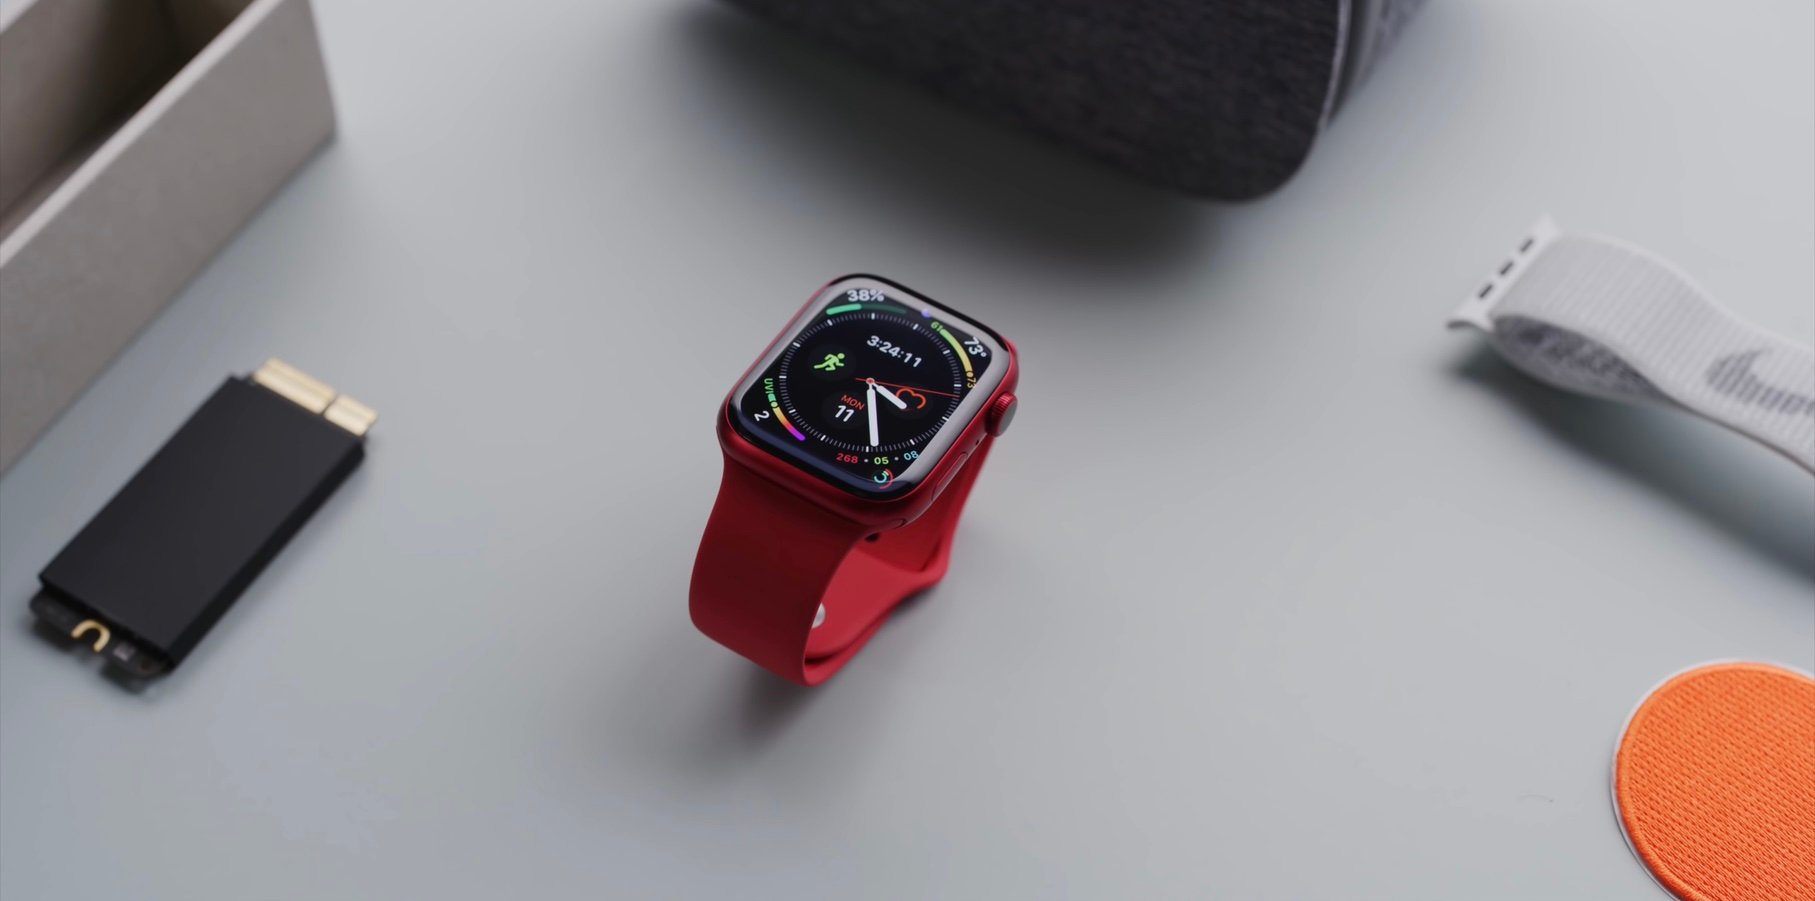 Tổng hợp đánh giá Apple Watch Series 7: Màn hình lớn hơn một chút, pin sạc nhanh hơn một chút